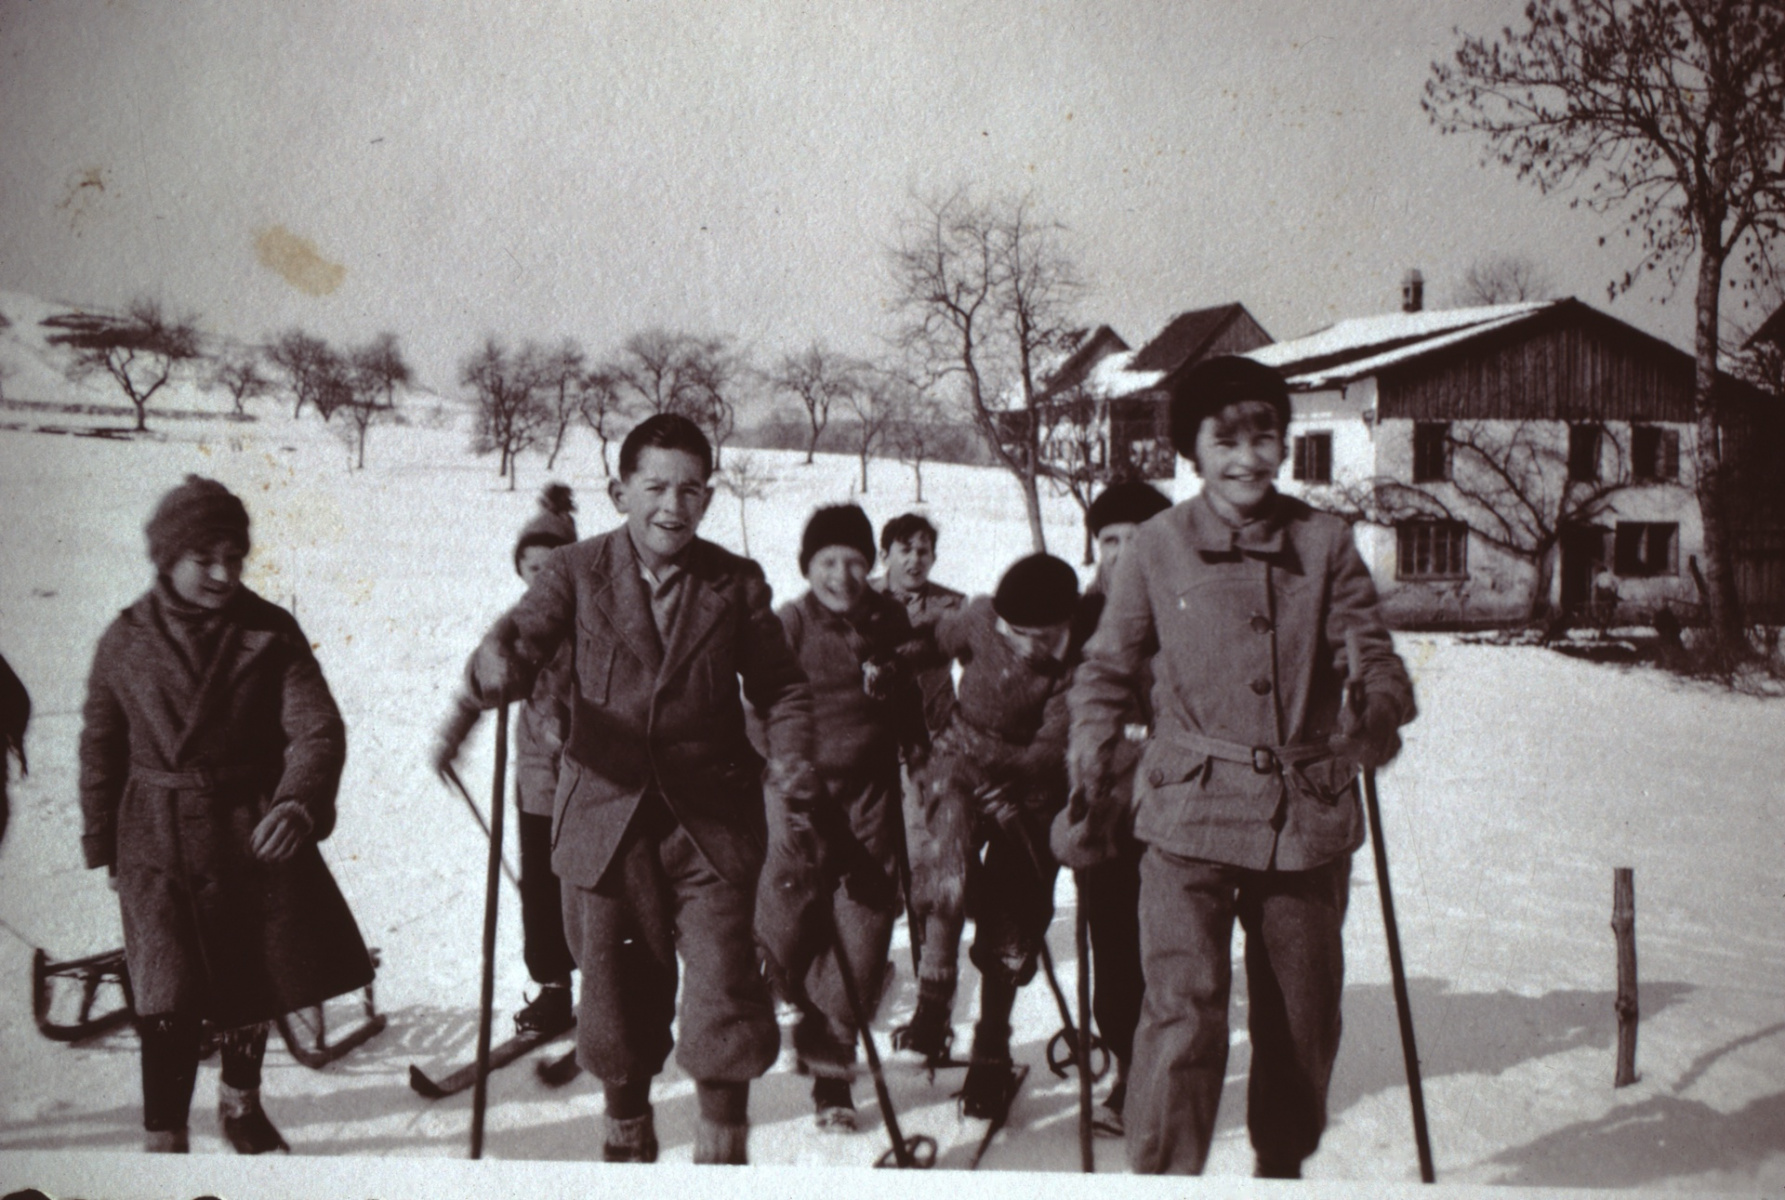 Wappenswil, Winter, Kinder mit Skis und Schlitten